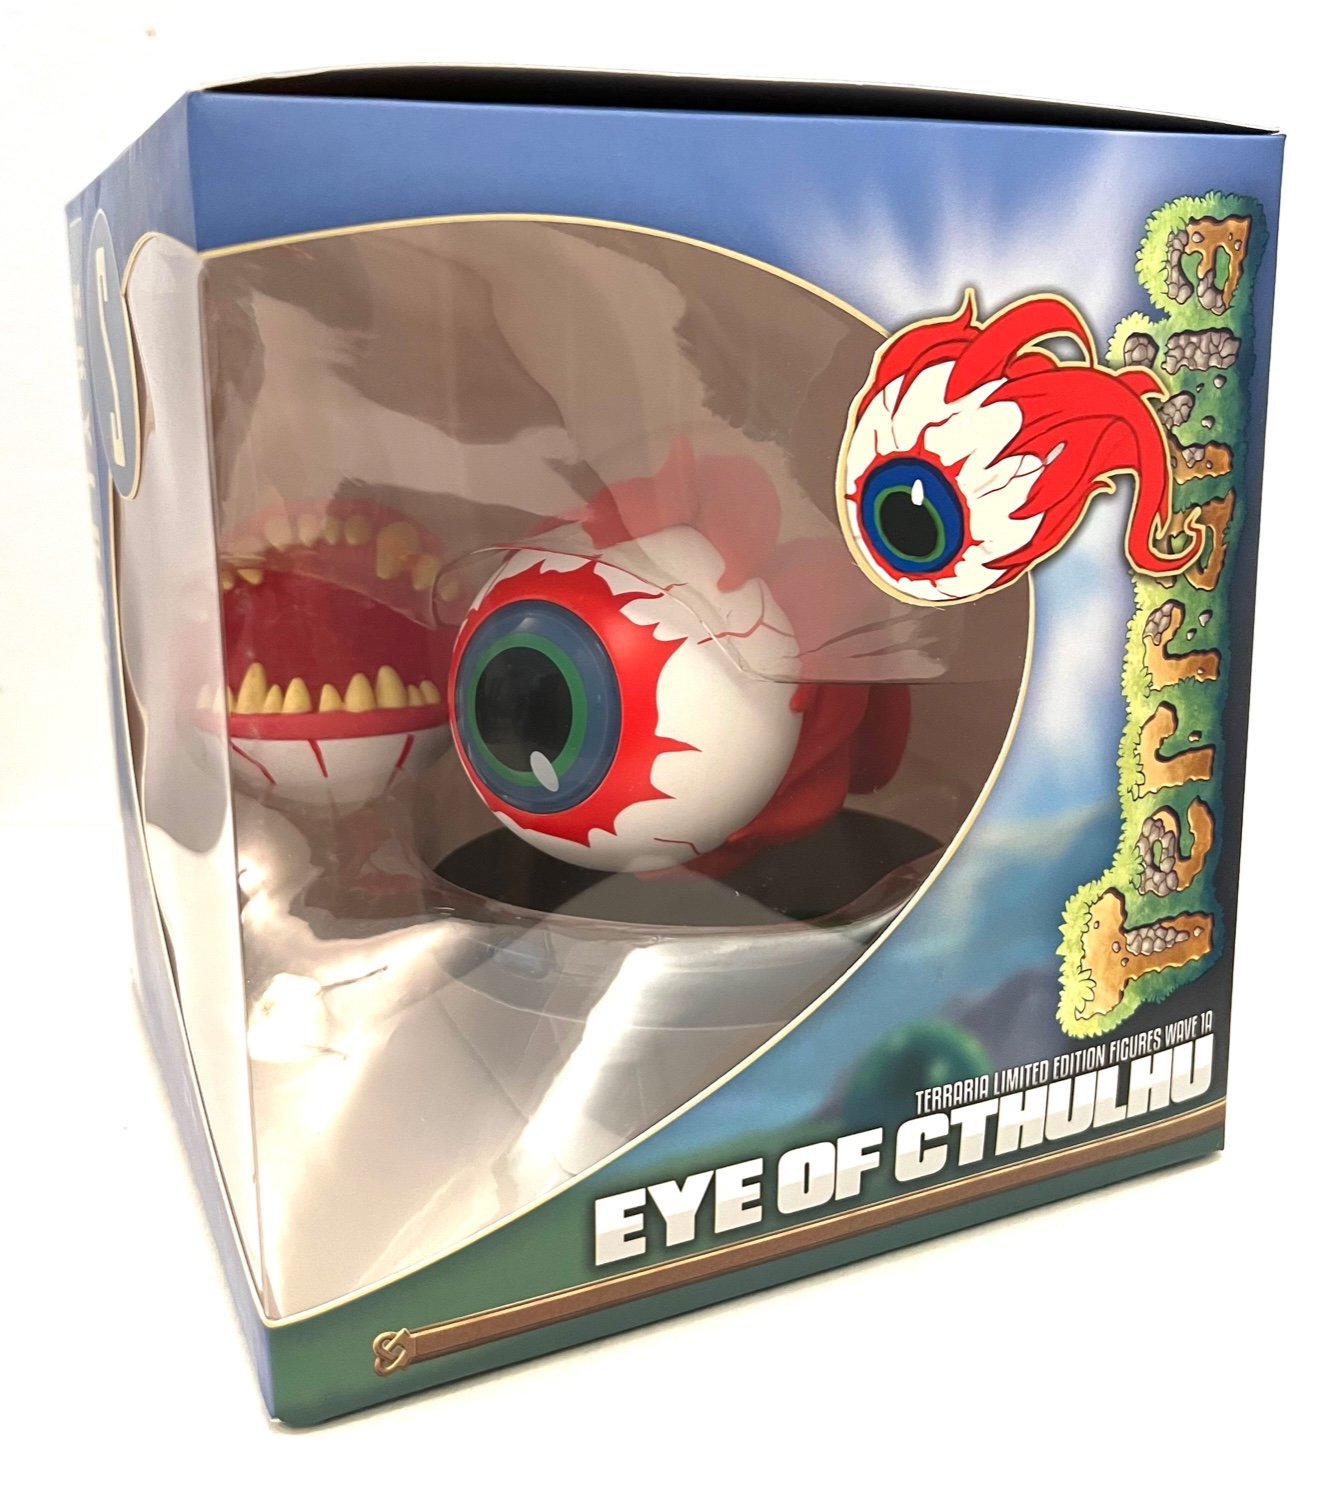 Eye of Cthulhu in packaging